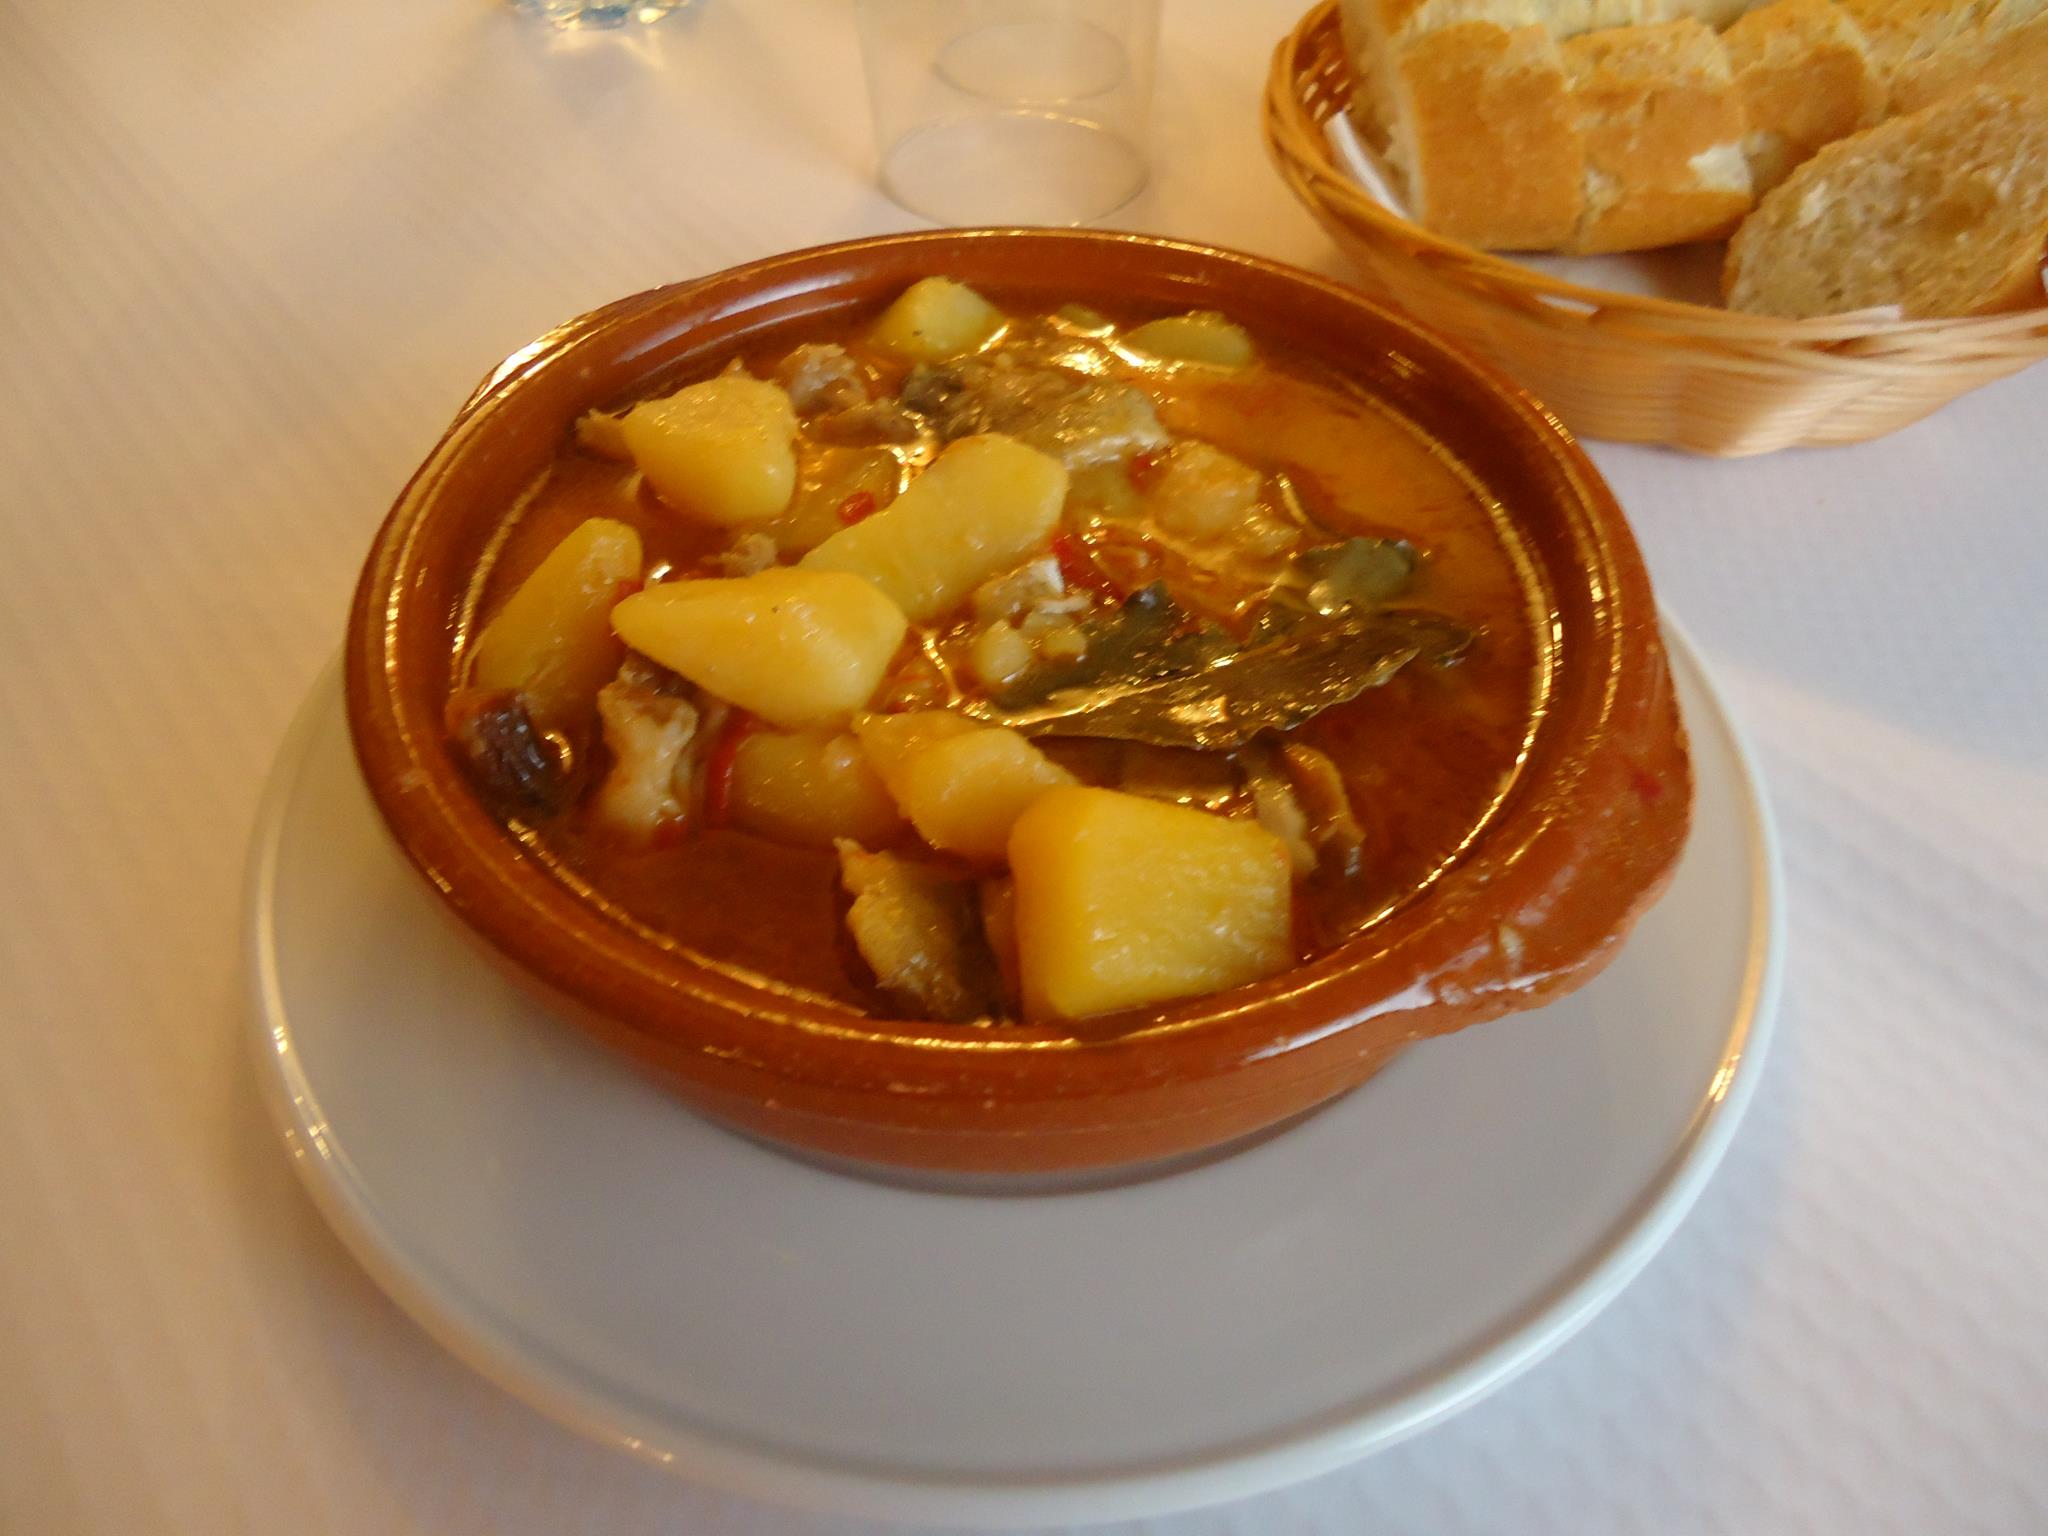 Restaurante de comida tradicional aragonesa con platos como la perdiz escabechada o el cochinillo a baja temperatura, migas de pastor o sopa de ajo.   